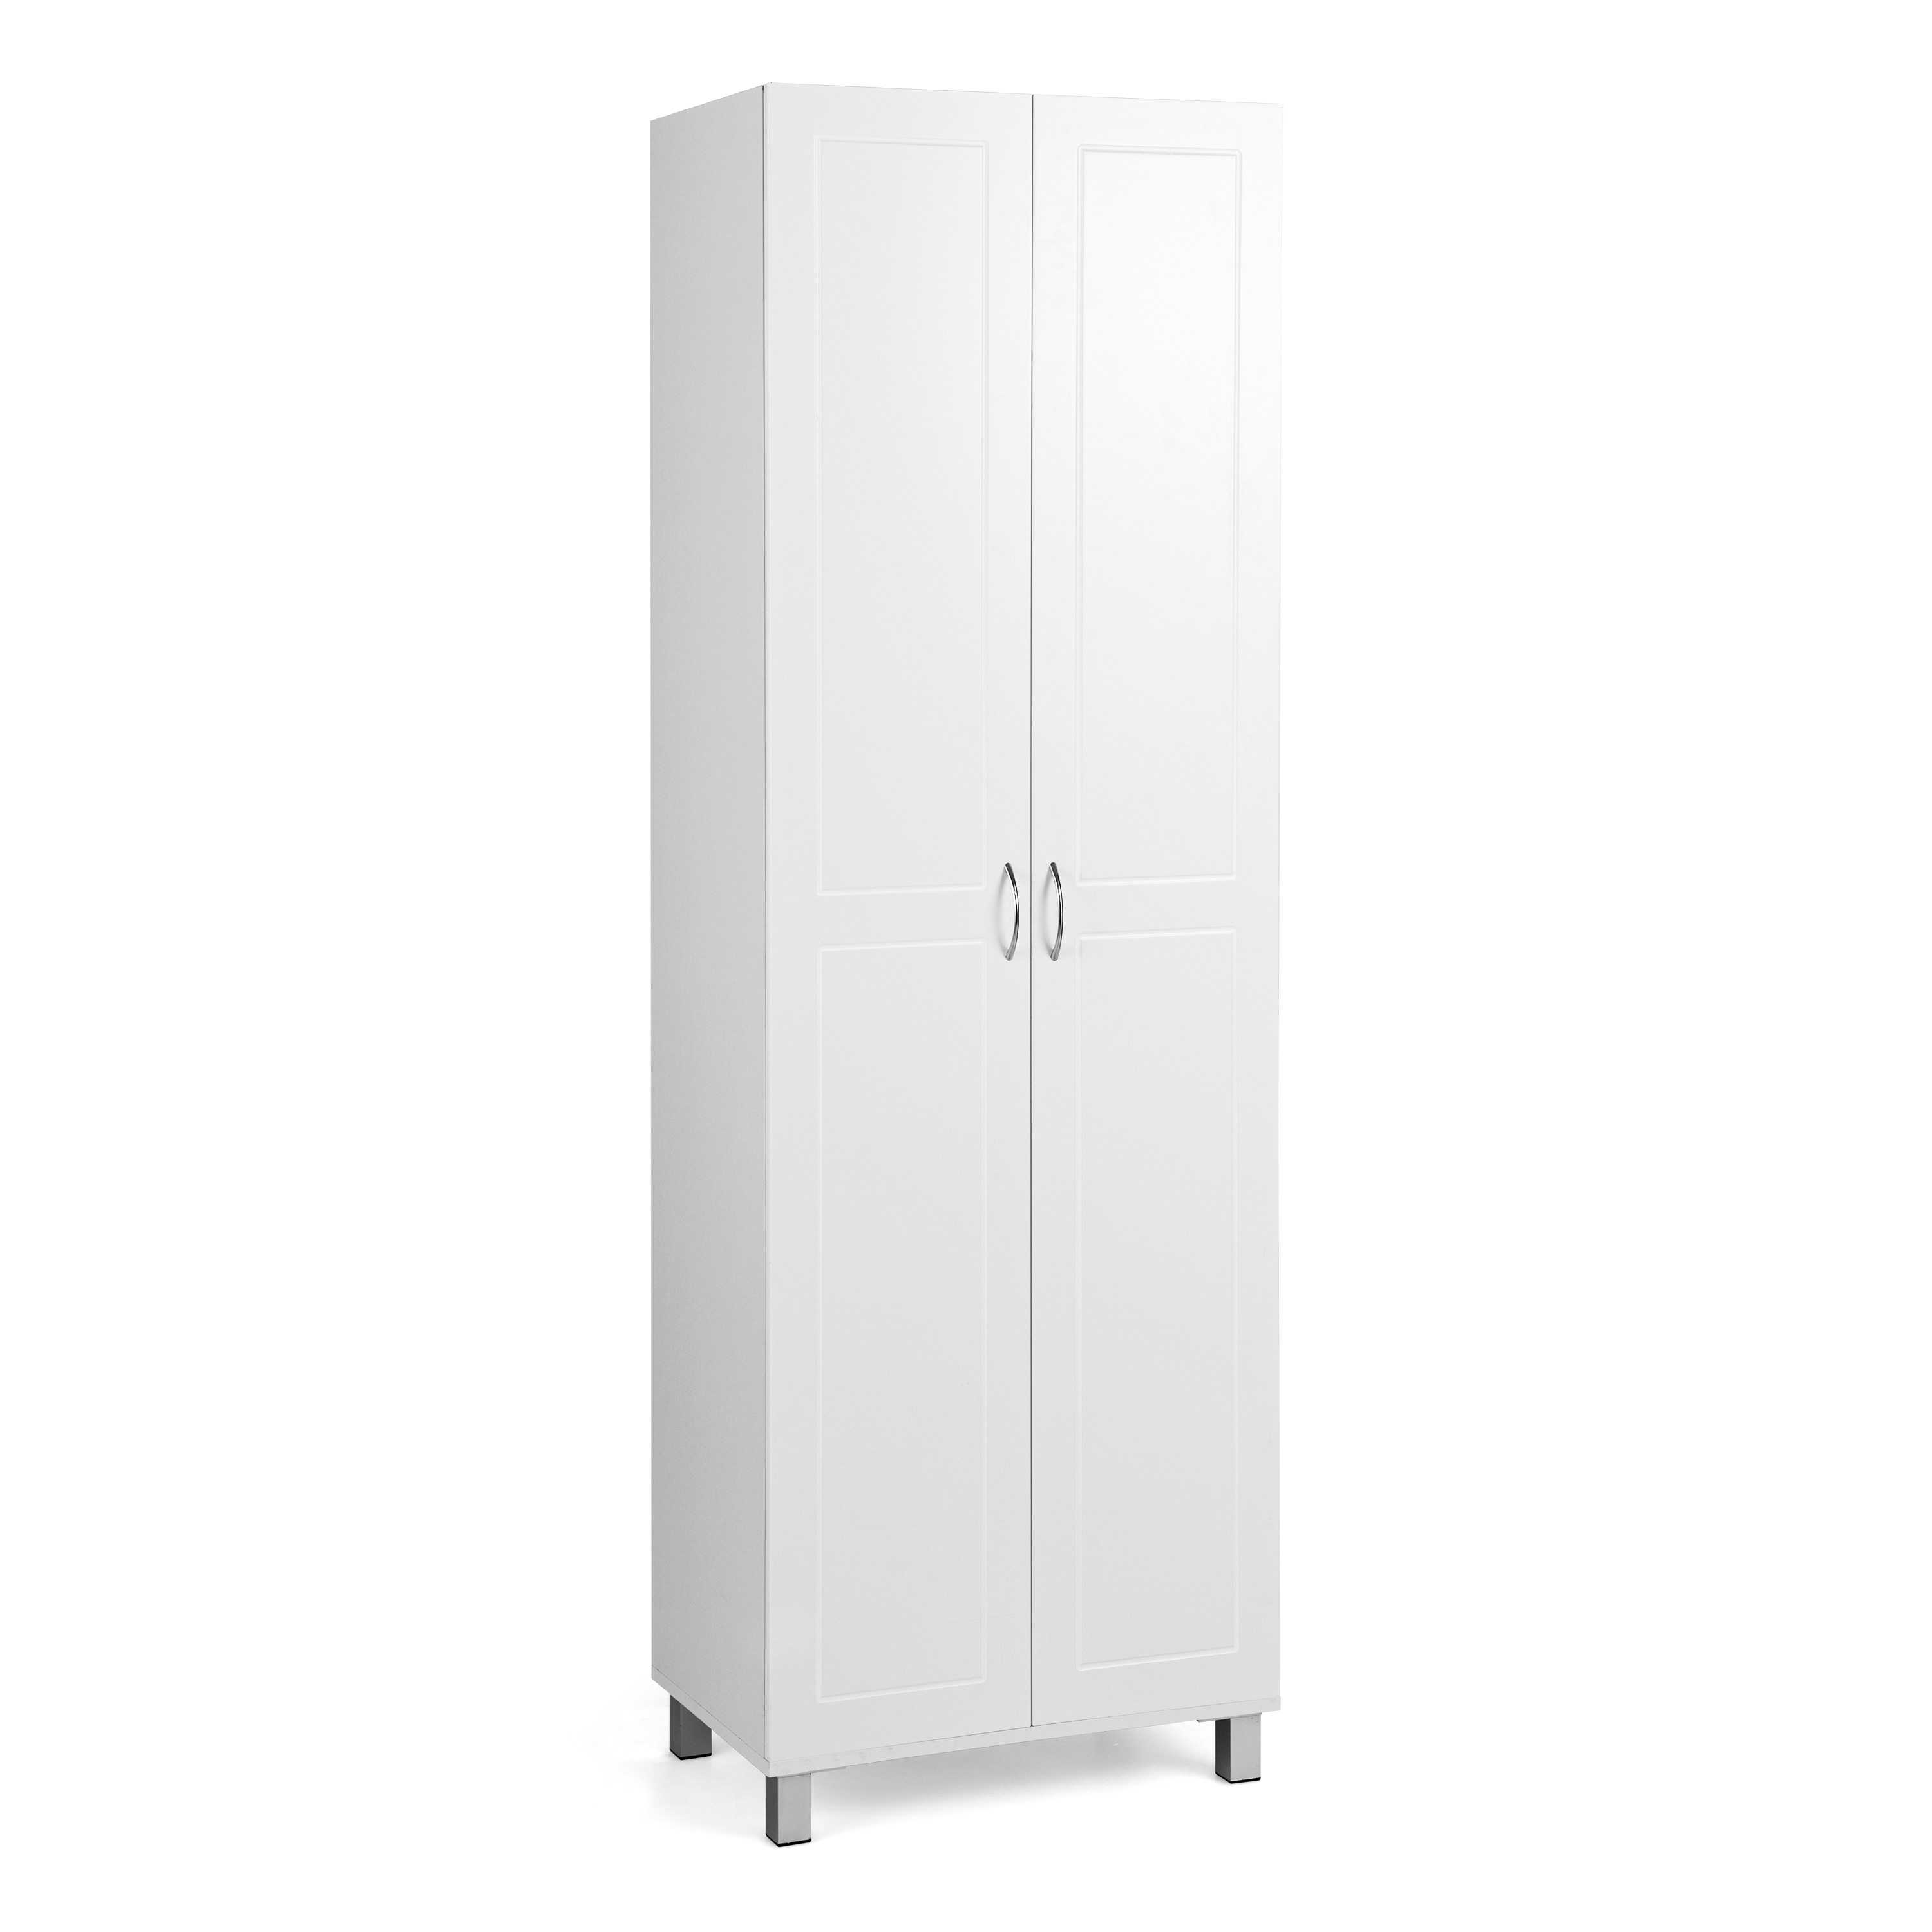 Costway Freestanding Tall Storage Cabinet Utility 2-Door Cabinet